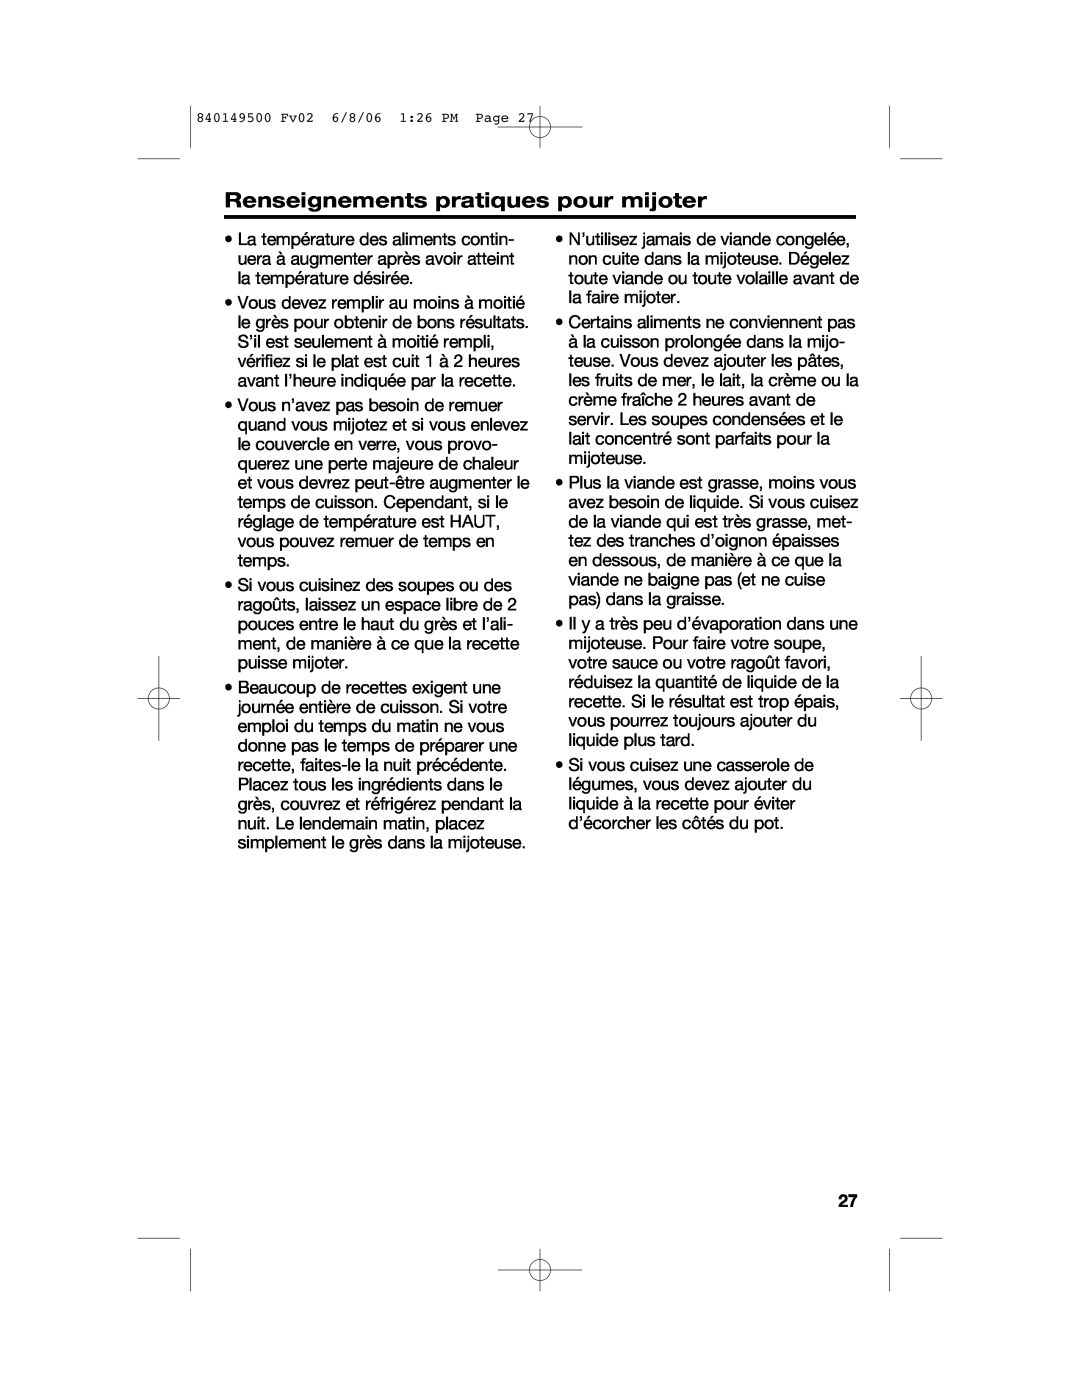 Proctor-Silex 840149500 manual Renseignements pratiques pour mijoter 